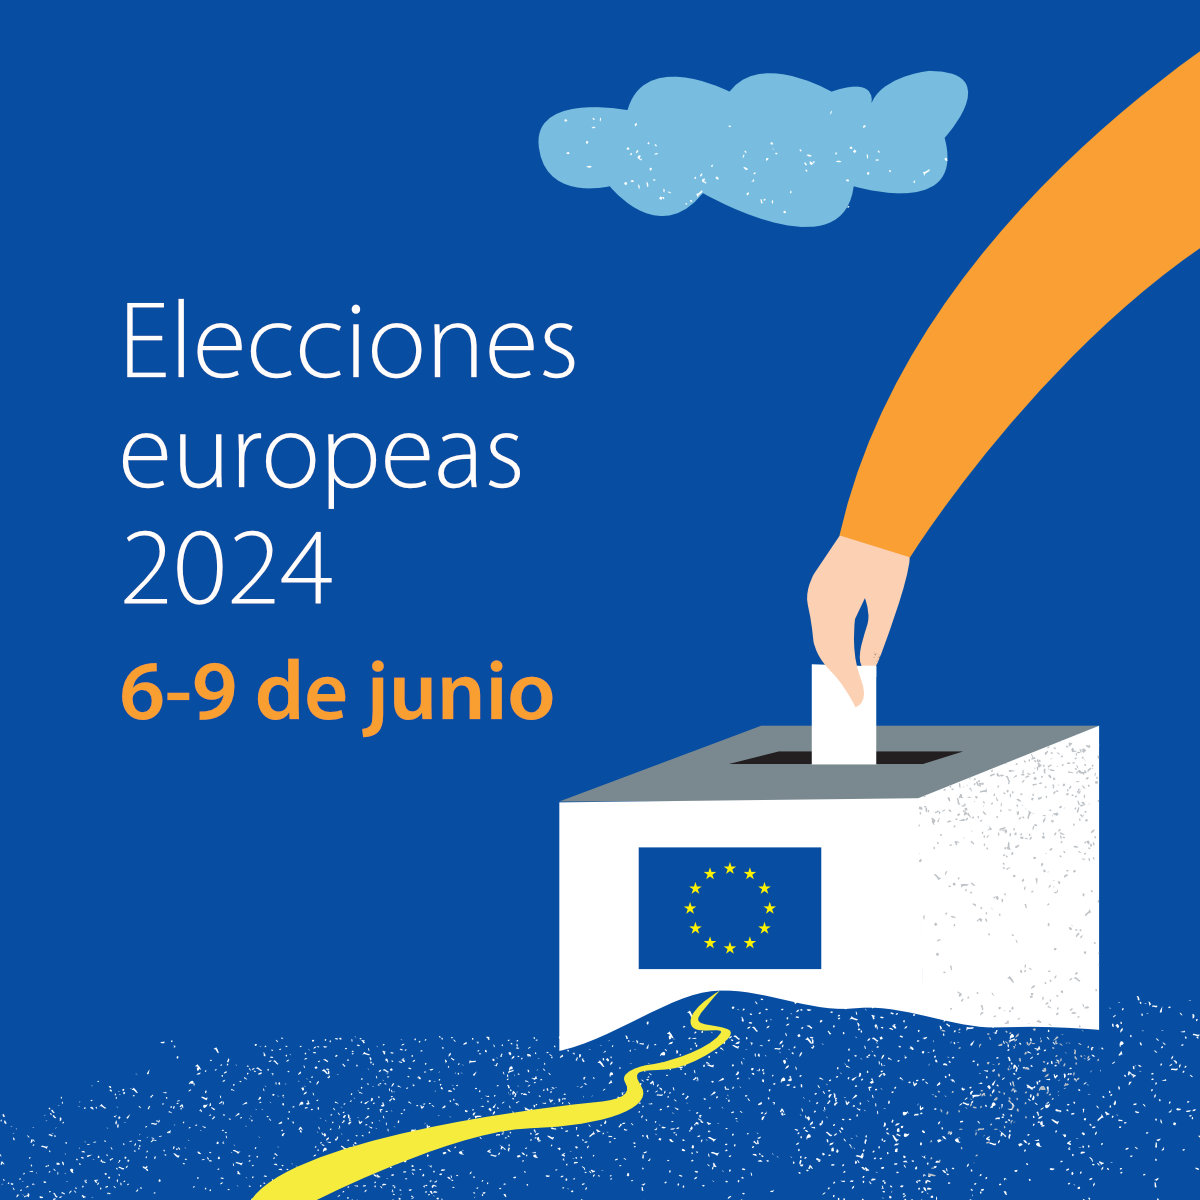 Elecciones europeas 2024 - Square.jpg